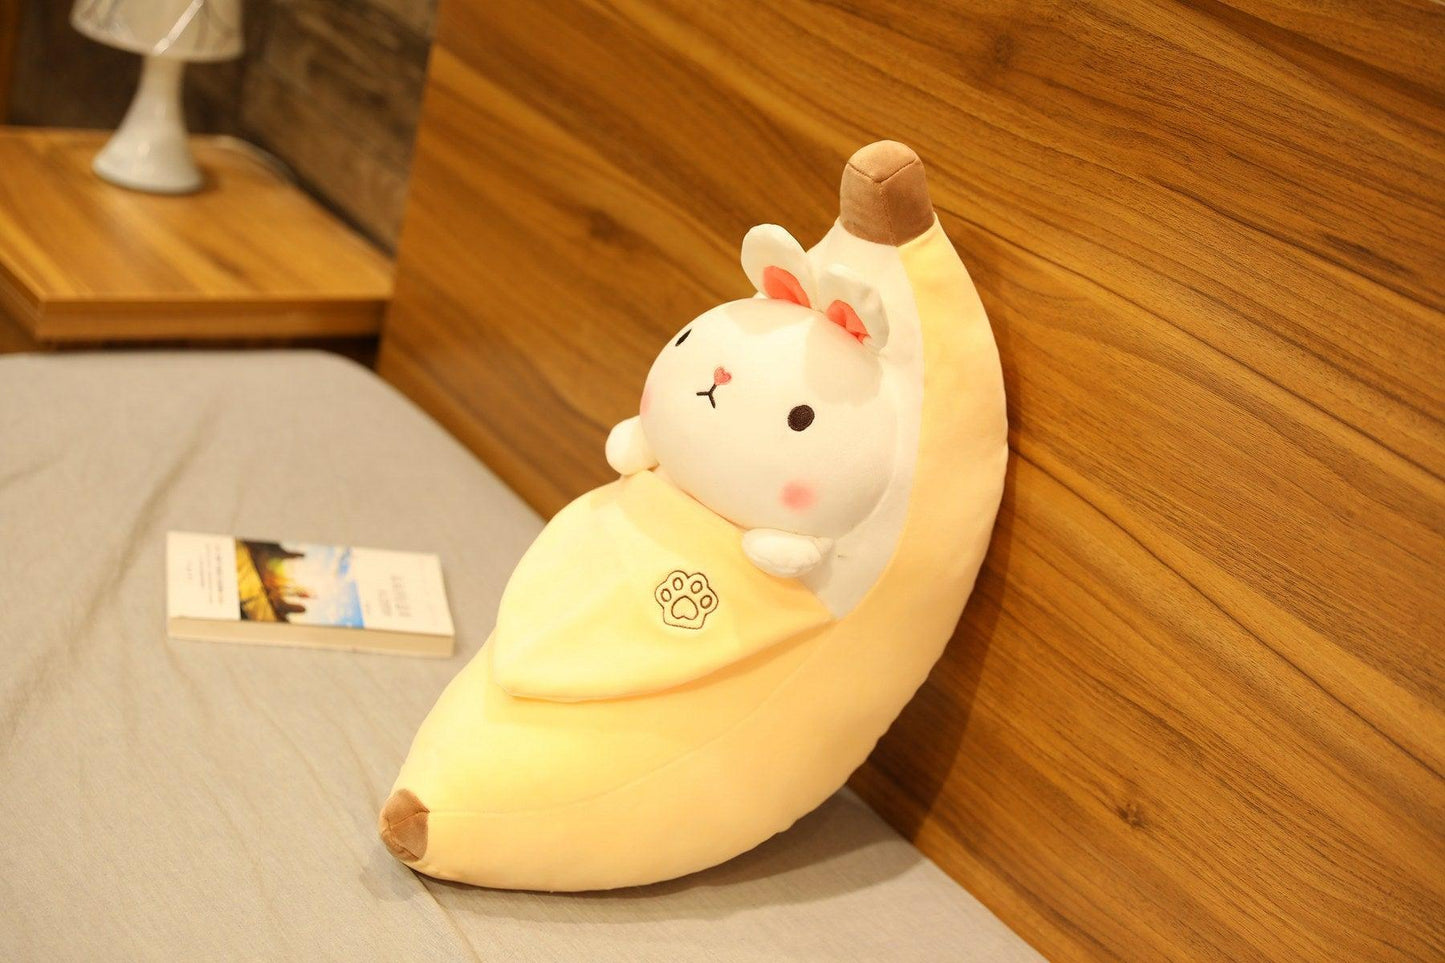 Jouet peluche créatif en forme de cochon qui pèle les bananes